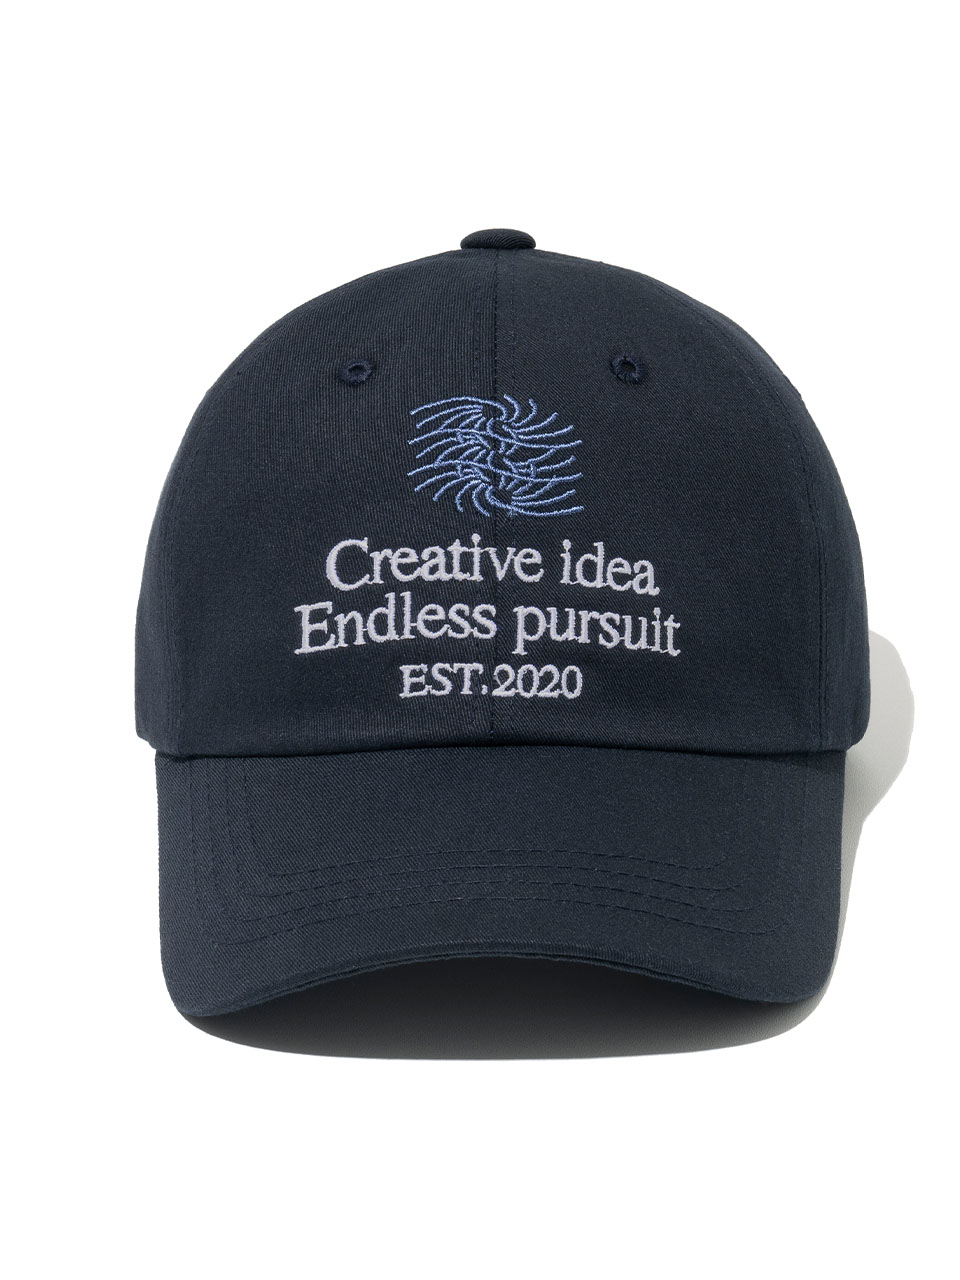 New Creative Ball Cap [Deep Navy]